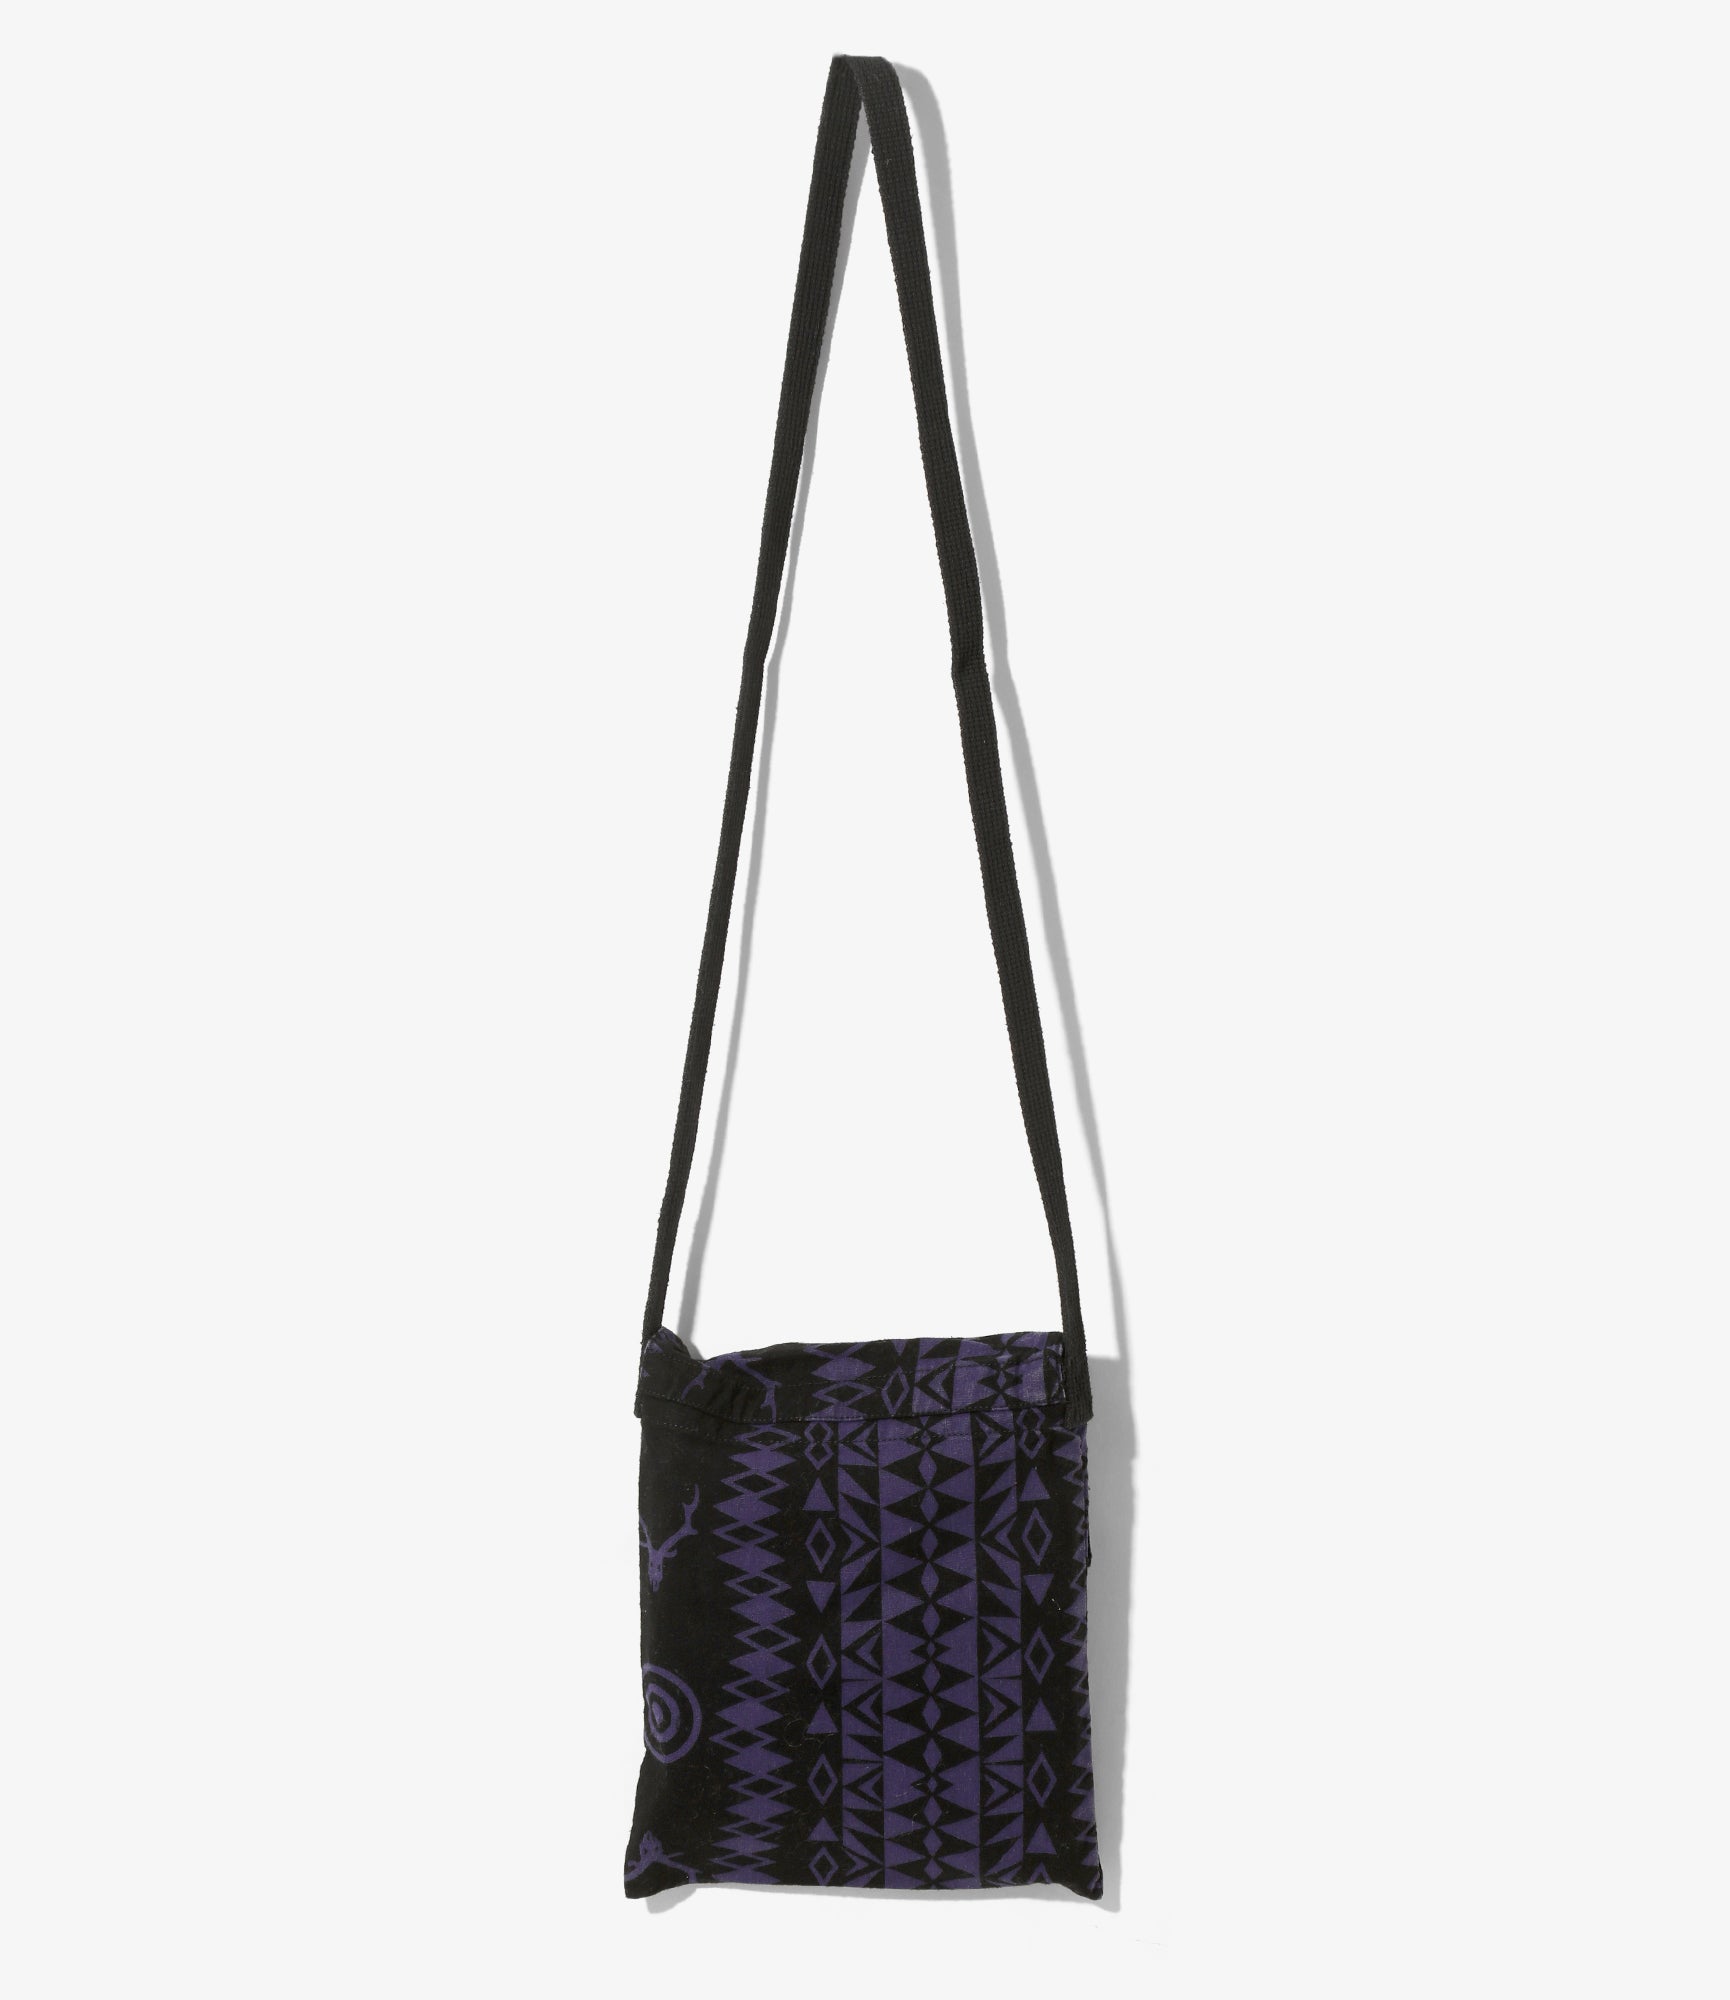 String Bag - Skull & Target - Flannel Cloth / Printed